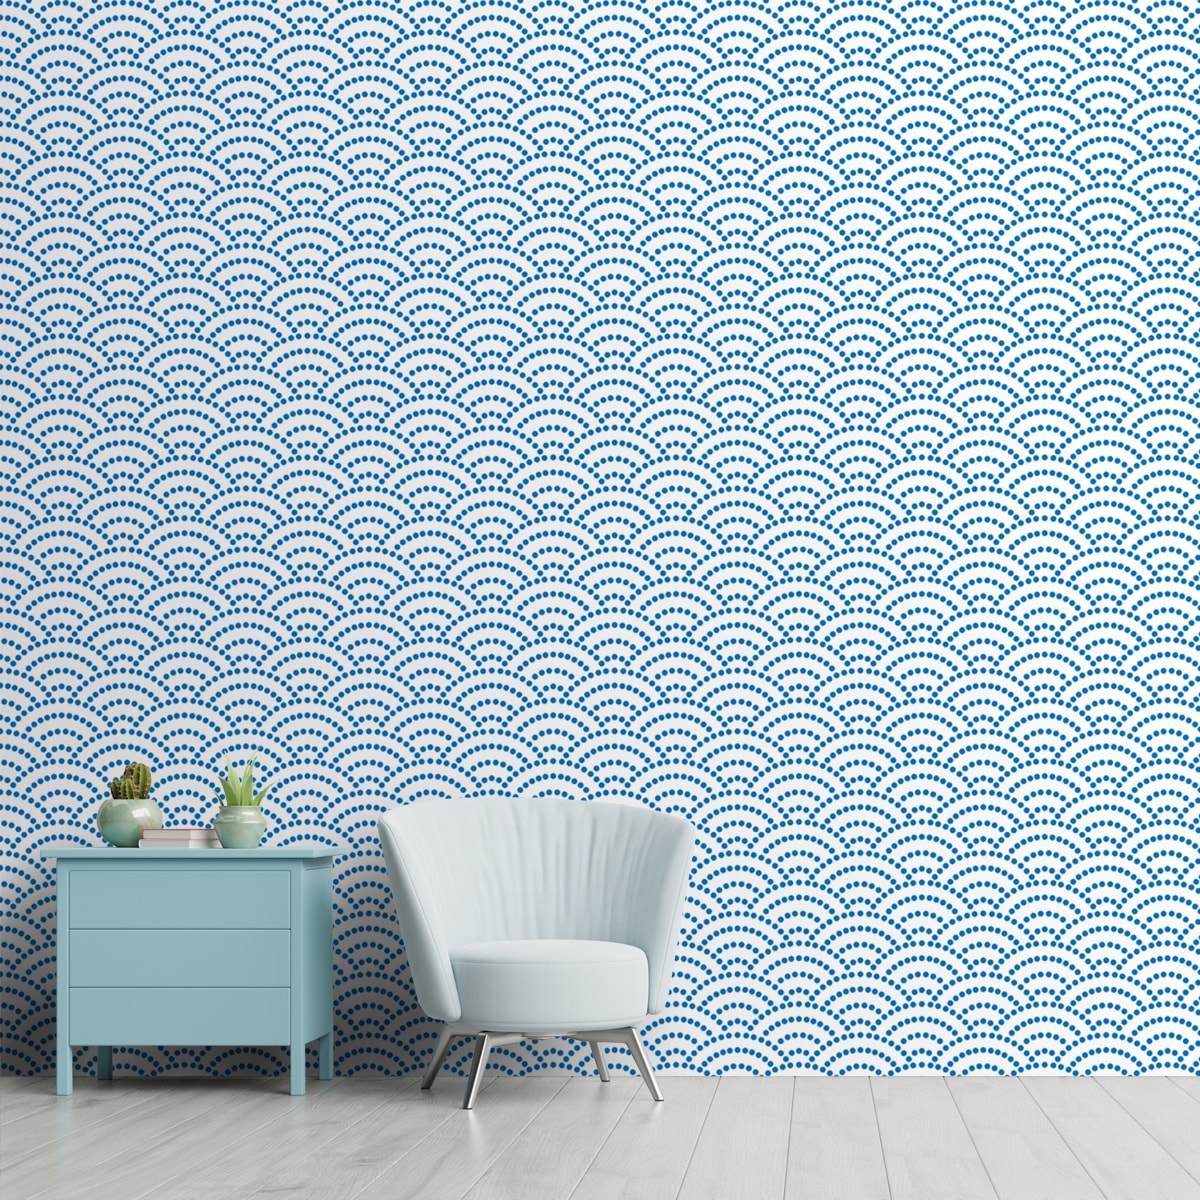 Premium Blue Wallpaper, Customised, Semi Circular Pattern